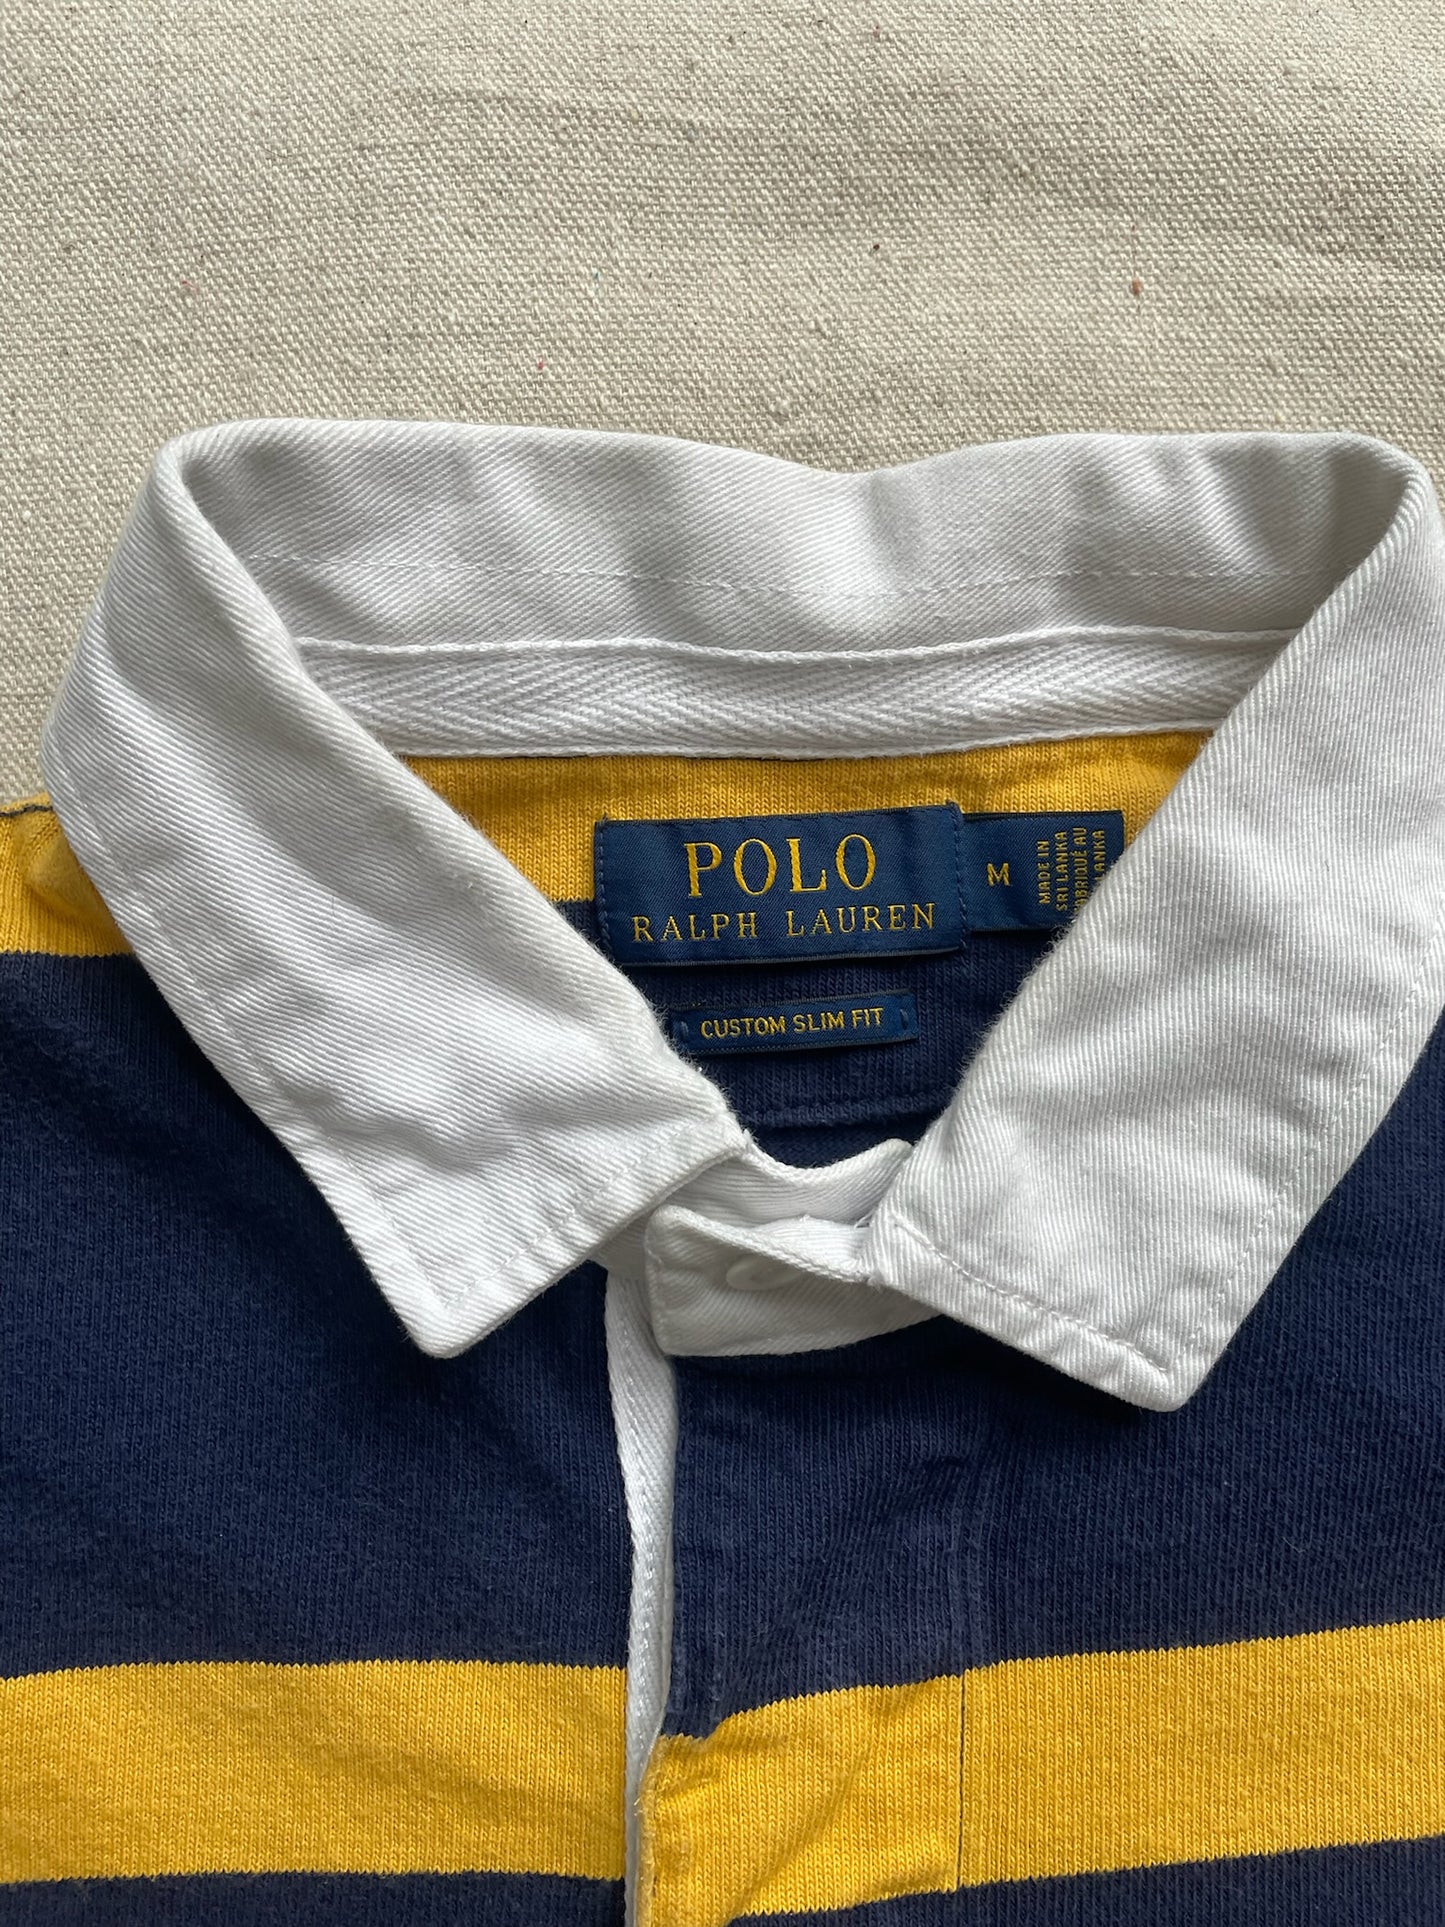 Polo Ralph Lauren Rugby Shirt—[M]